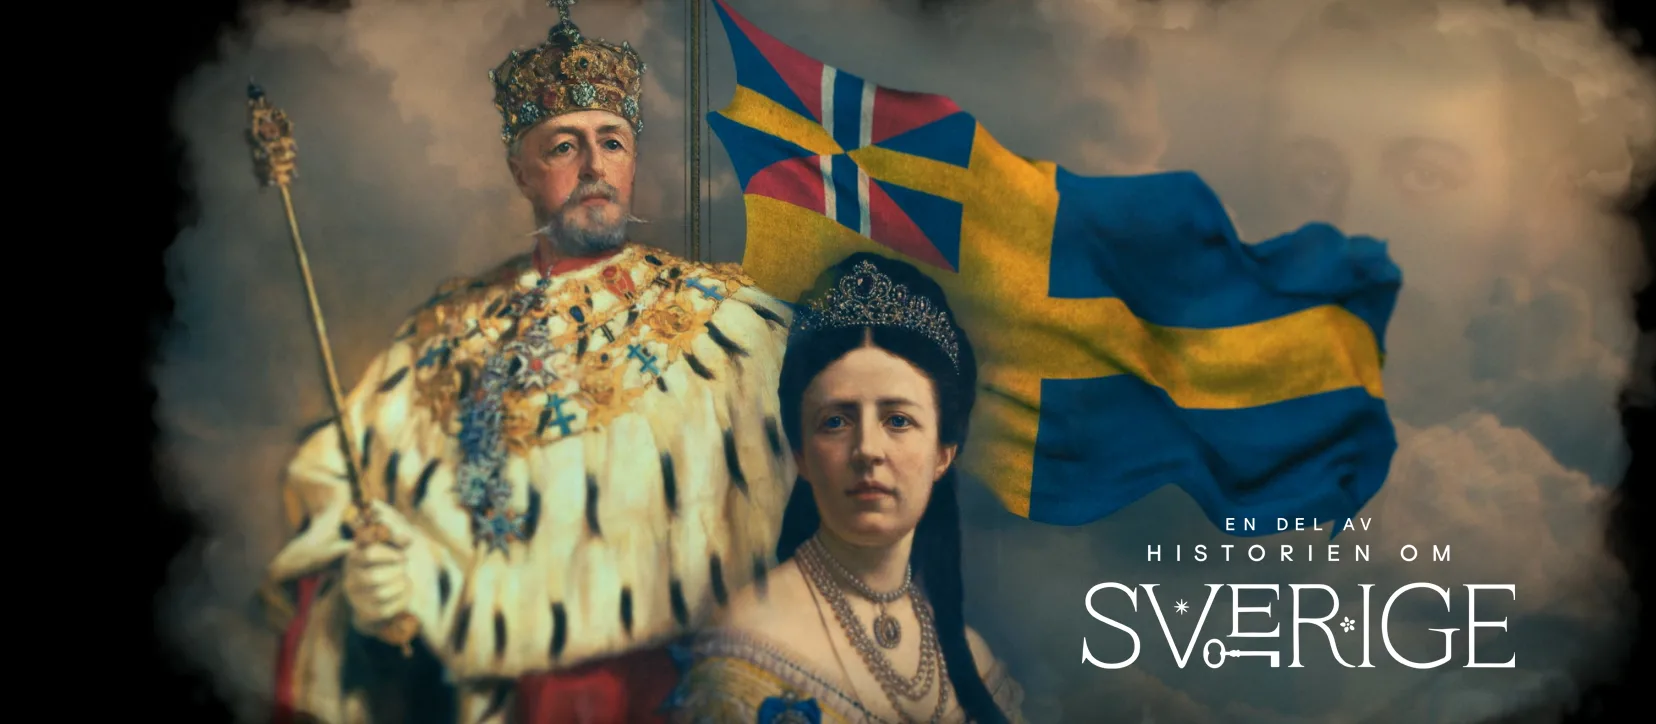 Oscar den andre och Sofia av Nassau med den svenska flaggan i bakgrunden.